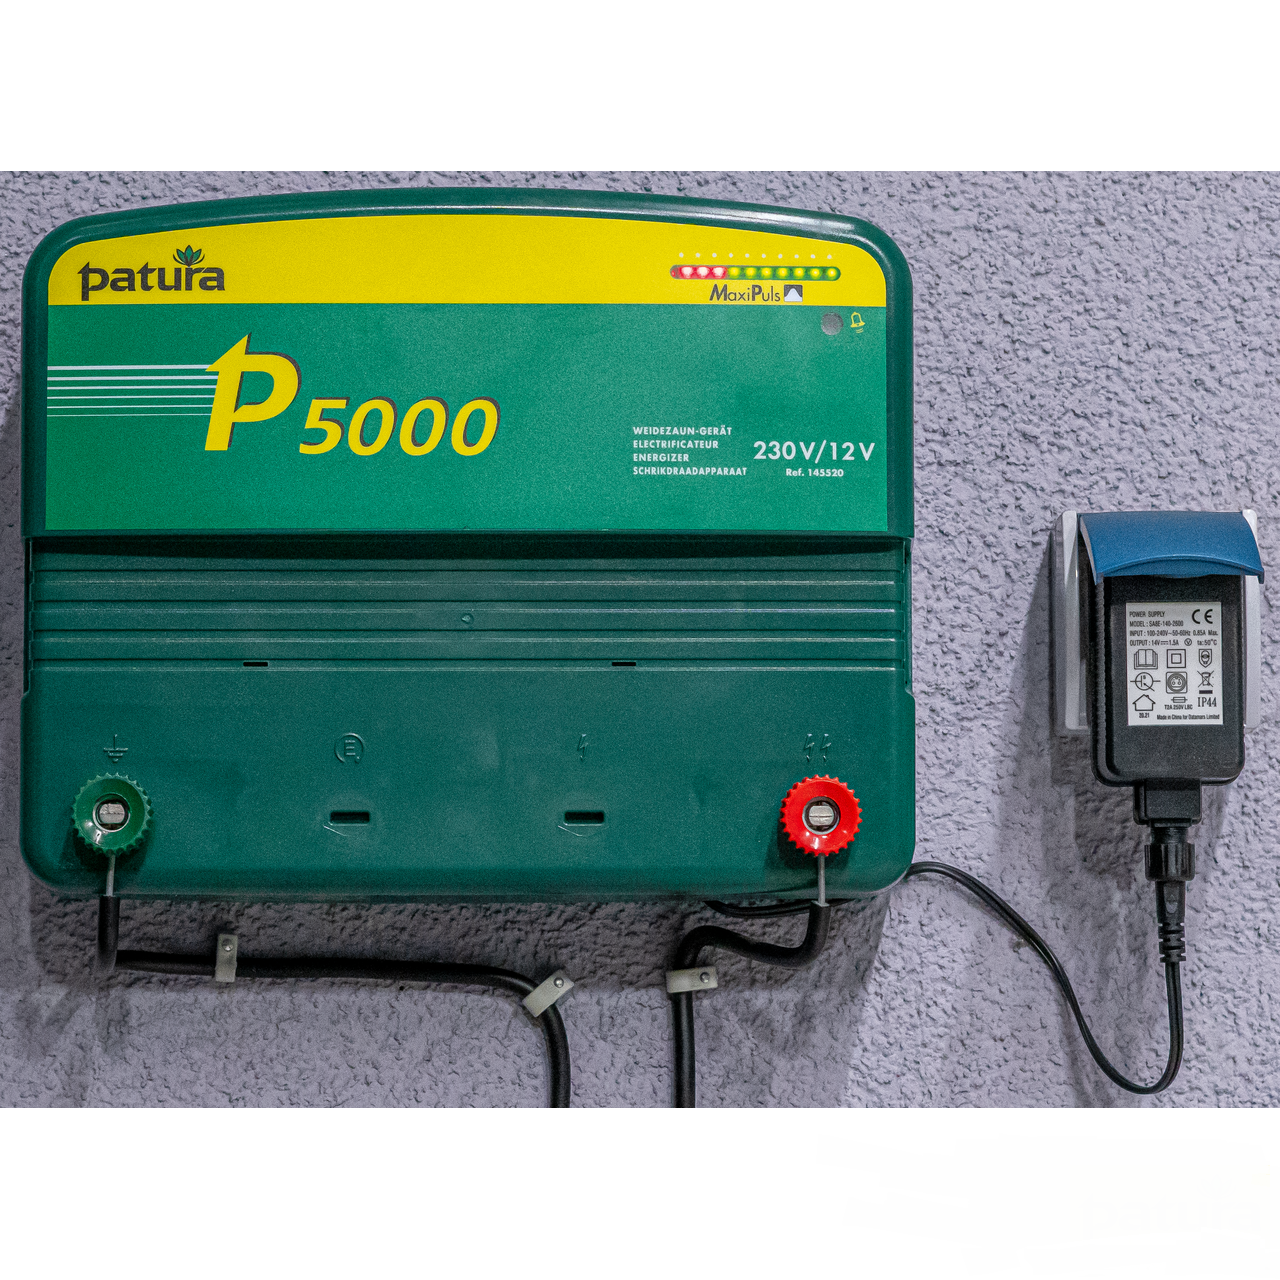 P5000, Multifunktionsgerät 230V / 12V MaxiPuls-Technologie, 10.7 Joule